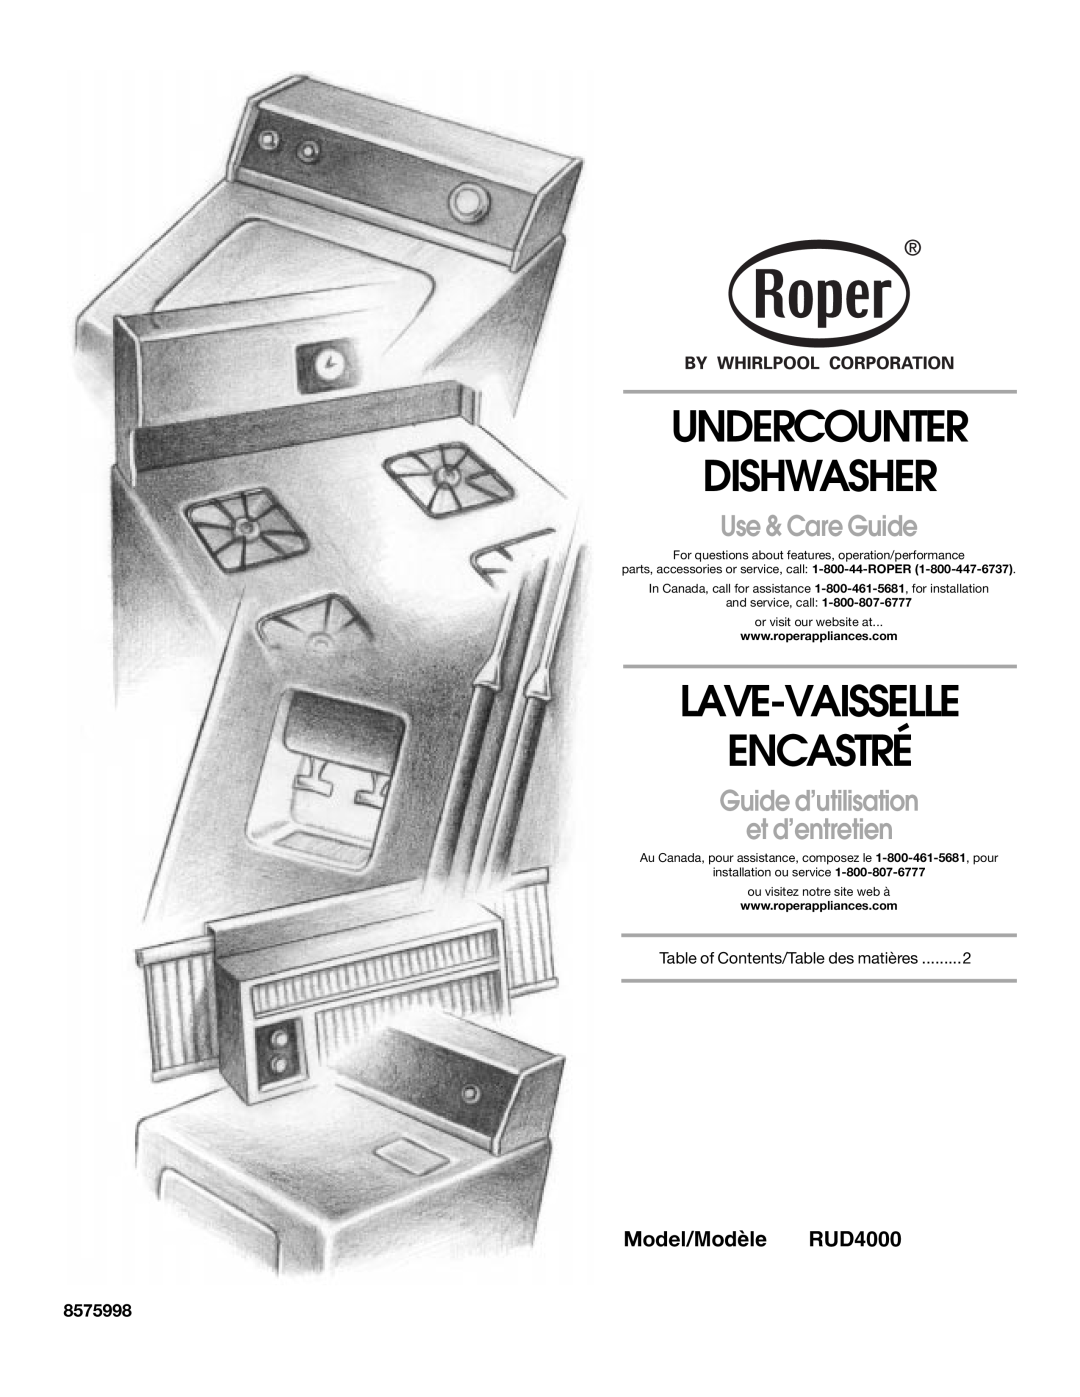 Whirlpool manual Undercounter Dishwasher, Lave-Vaisselle Encastré, Use & Care Guide, Model/Modèle RUD4000, 8575998 